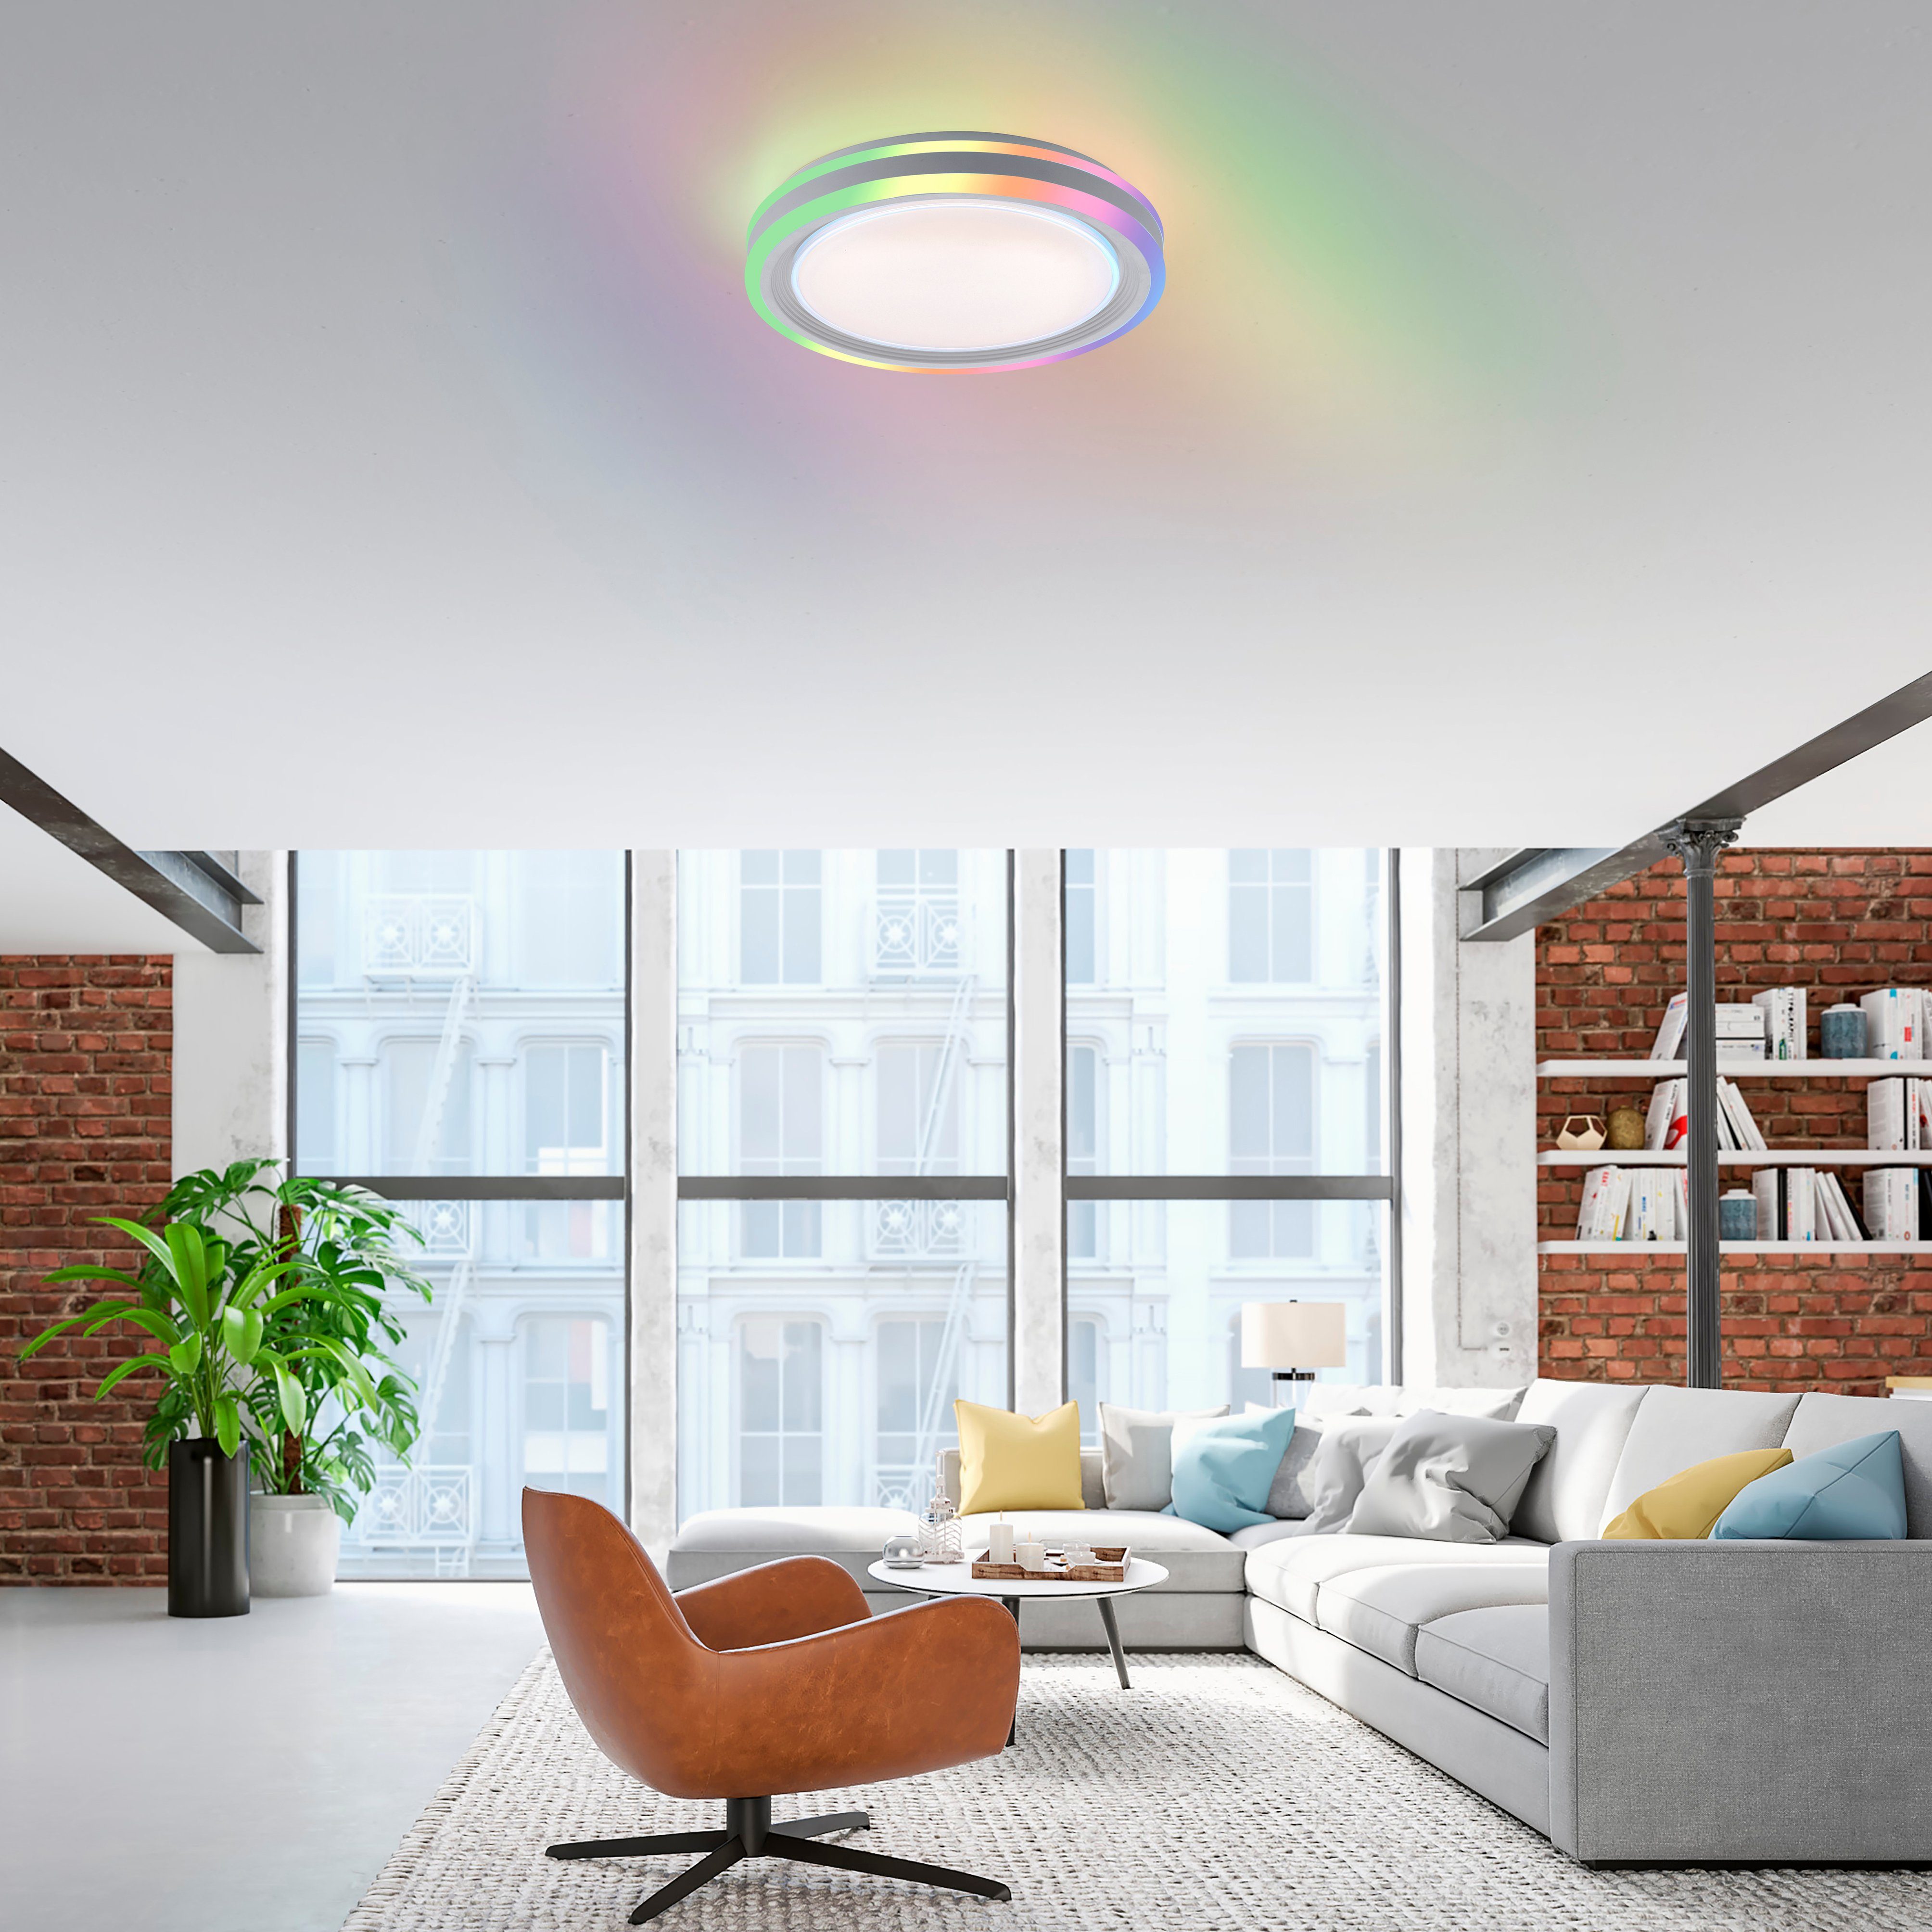 CCT LED, über warmweiß RGB-Rainbow, über fest - kaltweiß, Direkt Fernbedienung Deckenleuchte Leuchten SPHERIC, dimmbar integriert, - Fernbedienung, LED